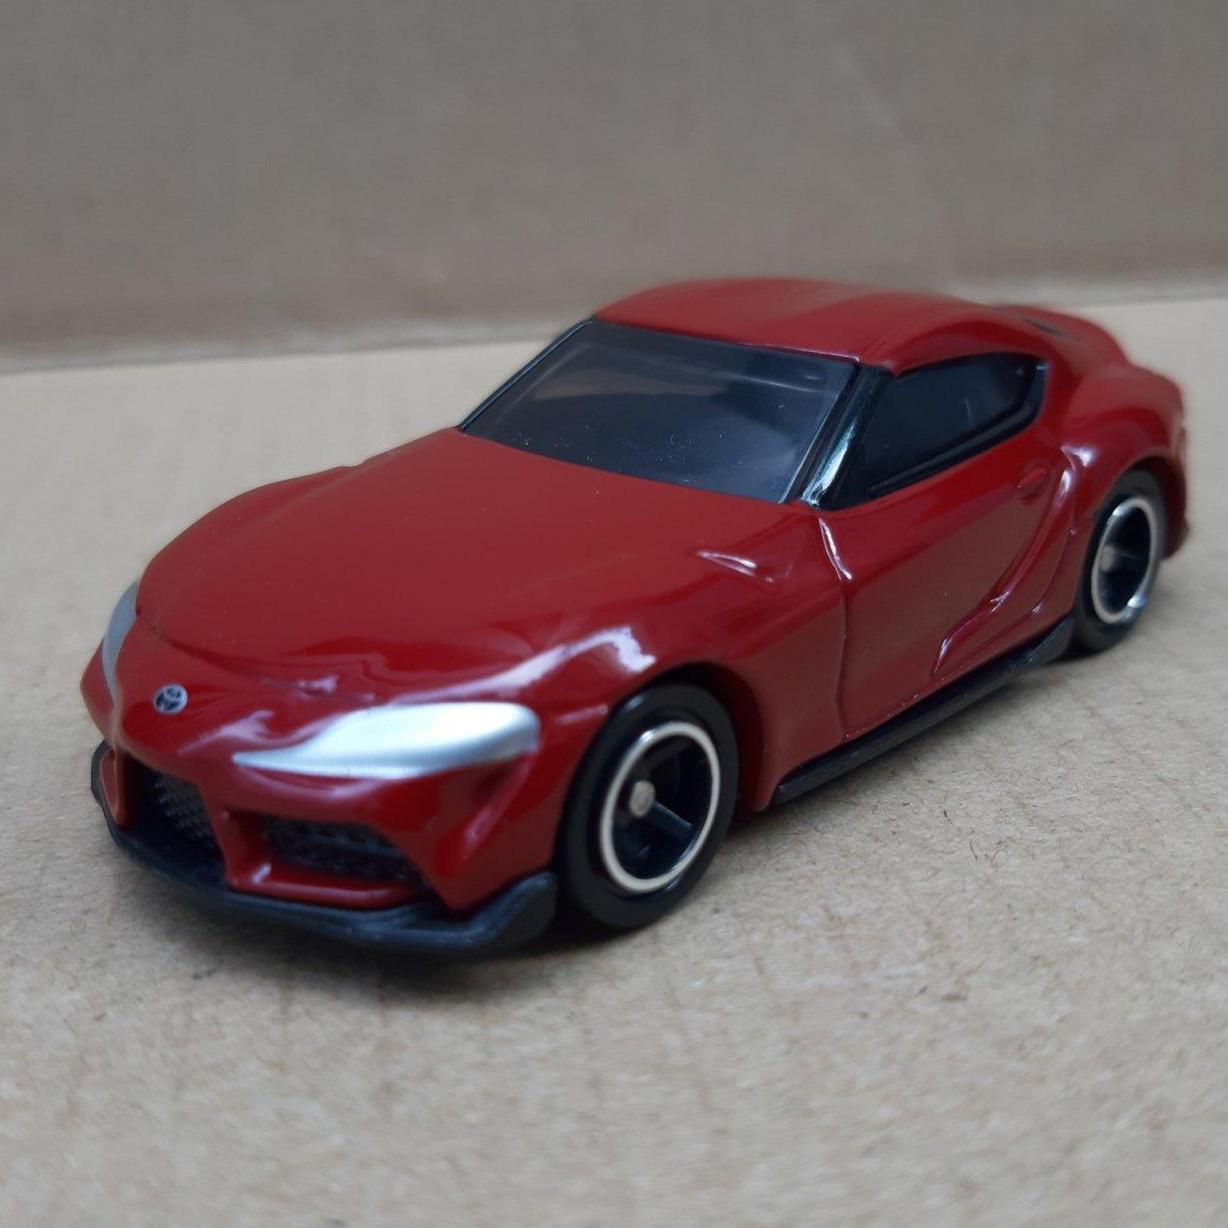 Xe mô hình Tomica - Xe Toyota GR Supra màu đỏ giá rẻ